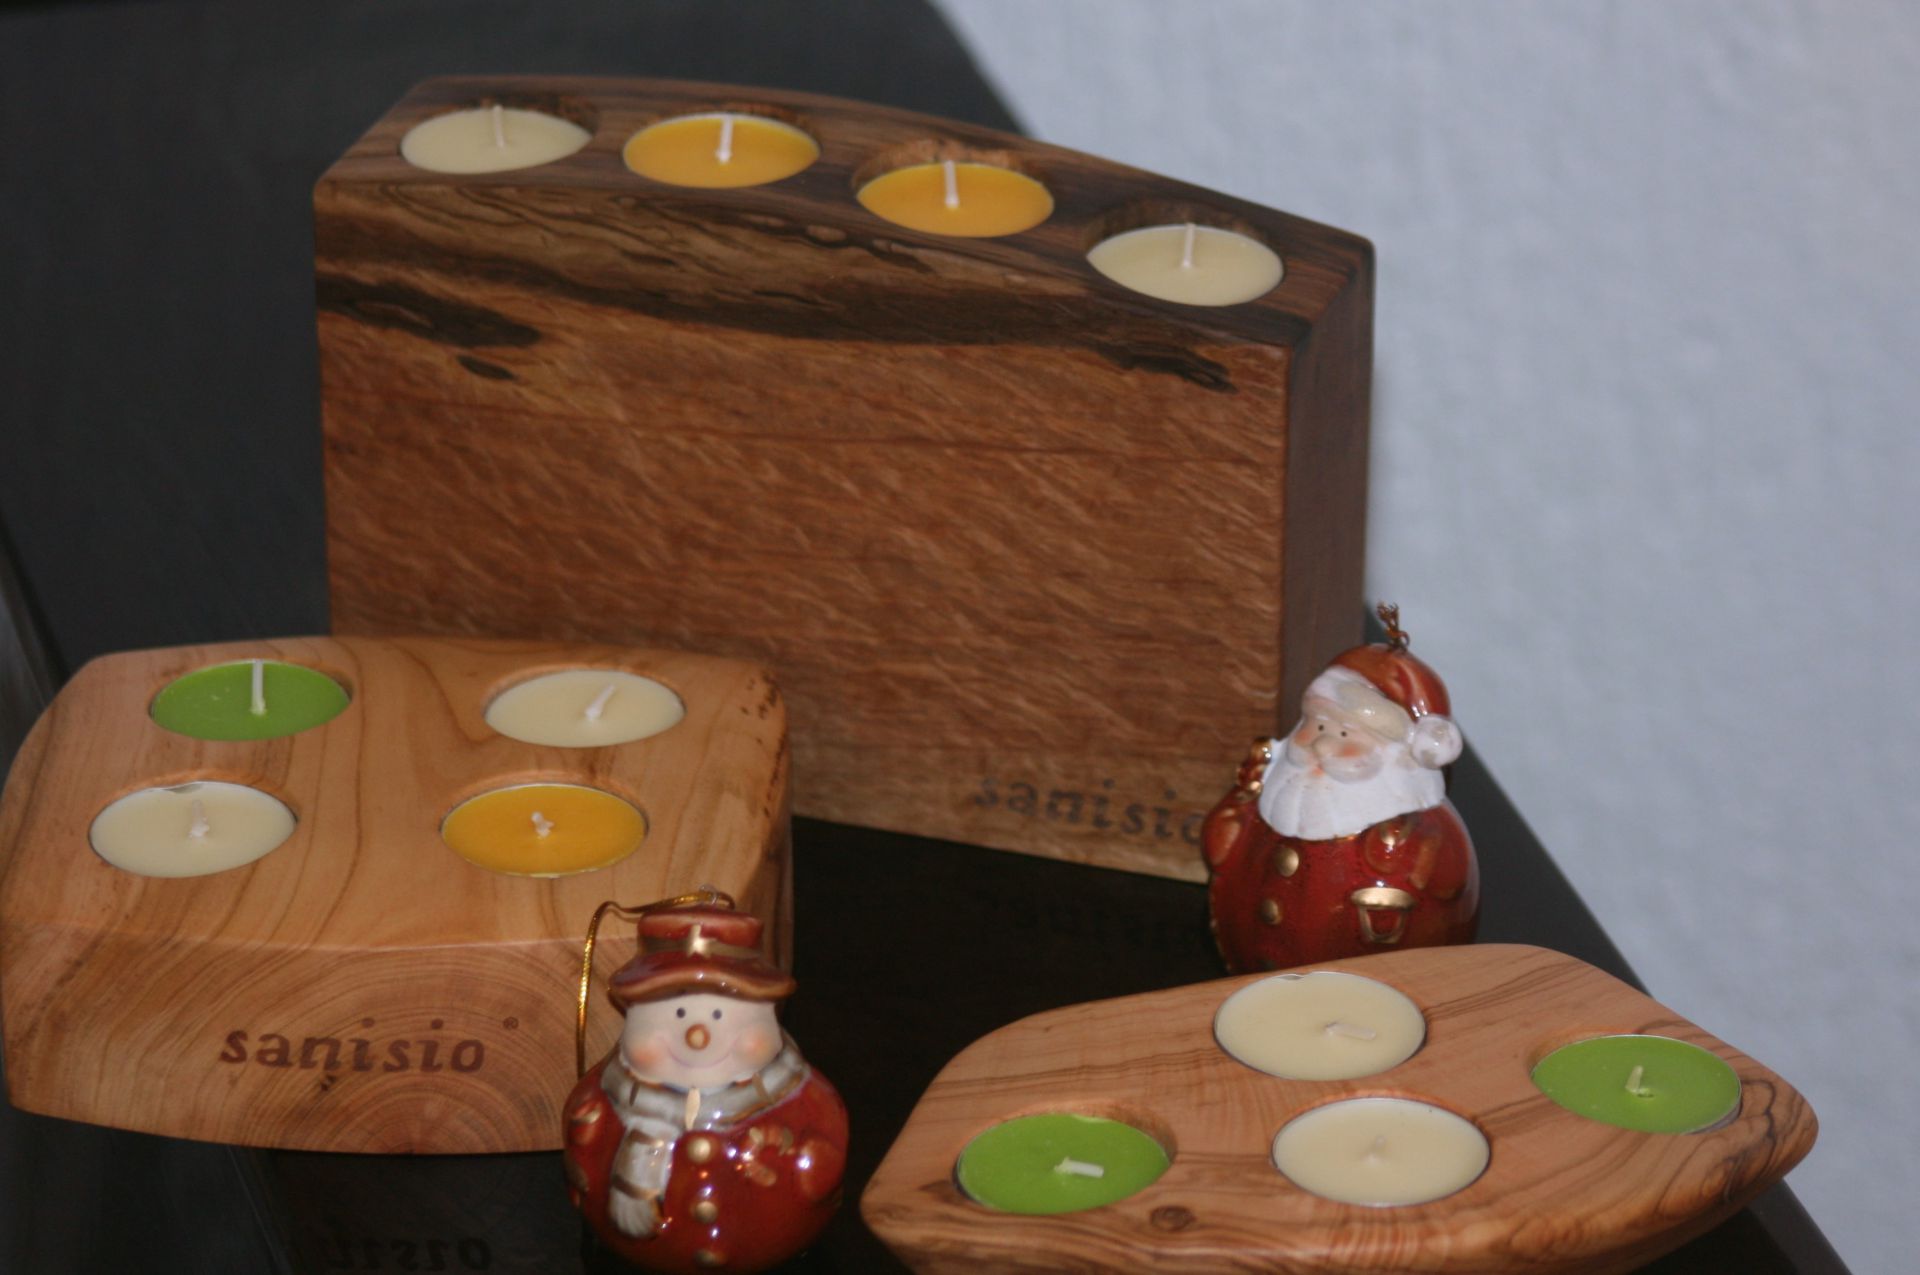 sacral wooden design sanisio unique candle holder Advent black holm oak apricot olive wood